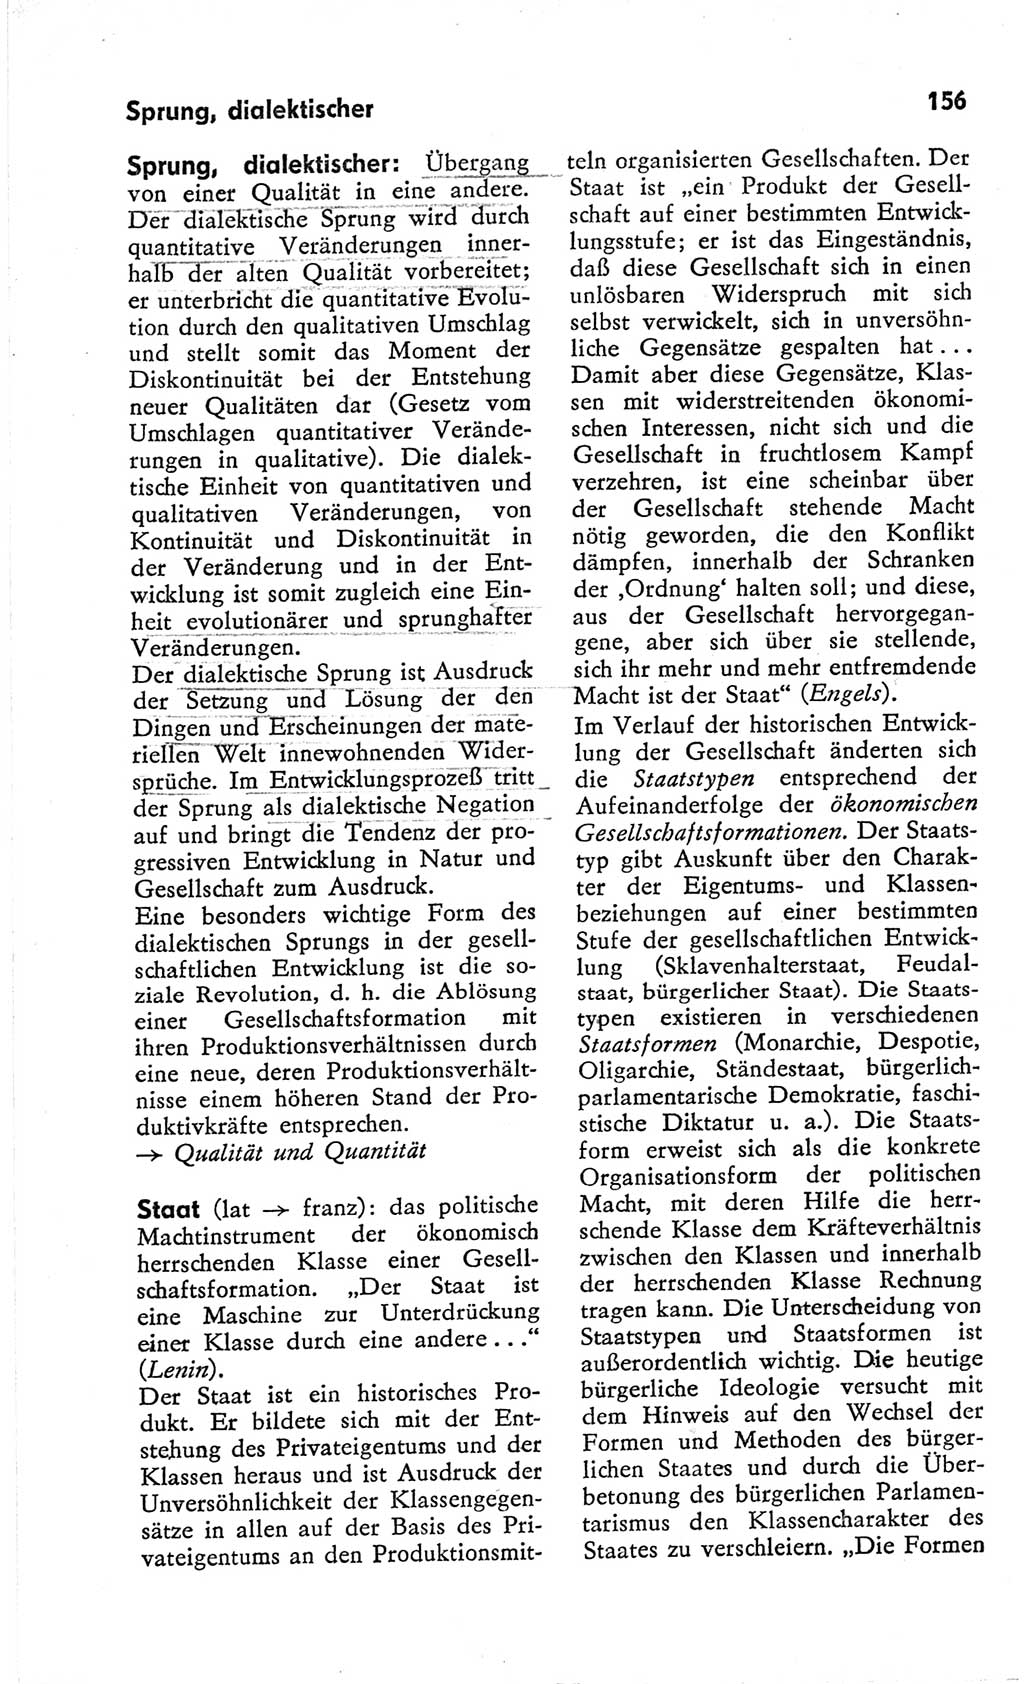 Kleines Wörterbuch der marxistisch-leninistischen Philosophie [Deutsche Demokratische Republik (DDR)] 1966, Seite 156 (Kl. Wb. ML Phil. DDR 1966, S. 156)